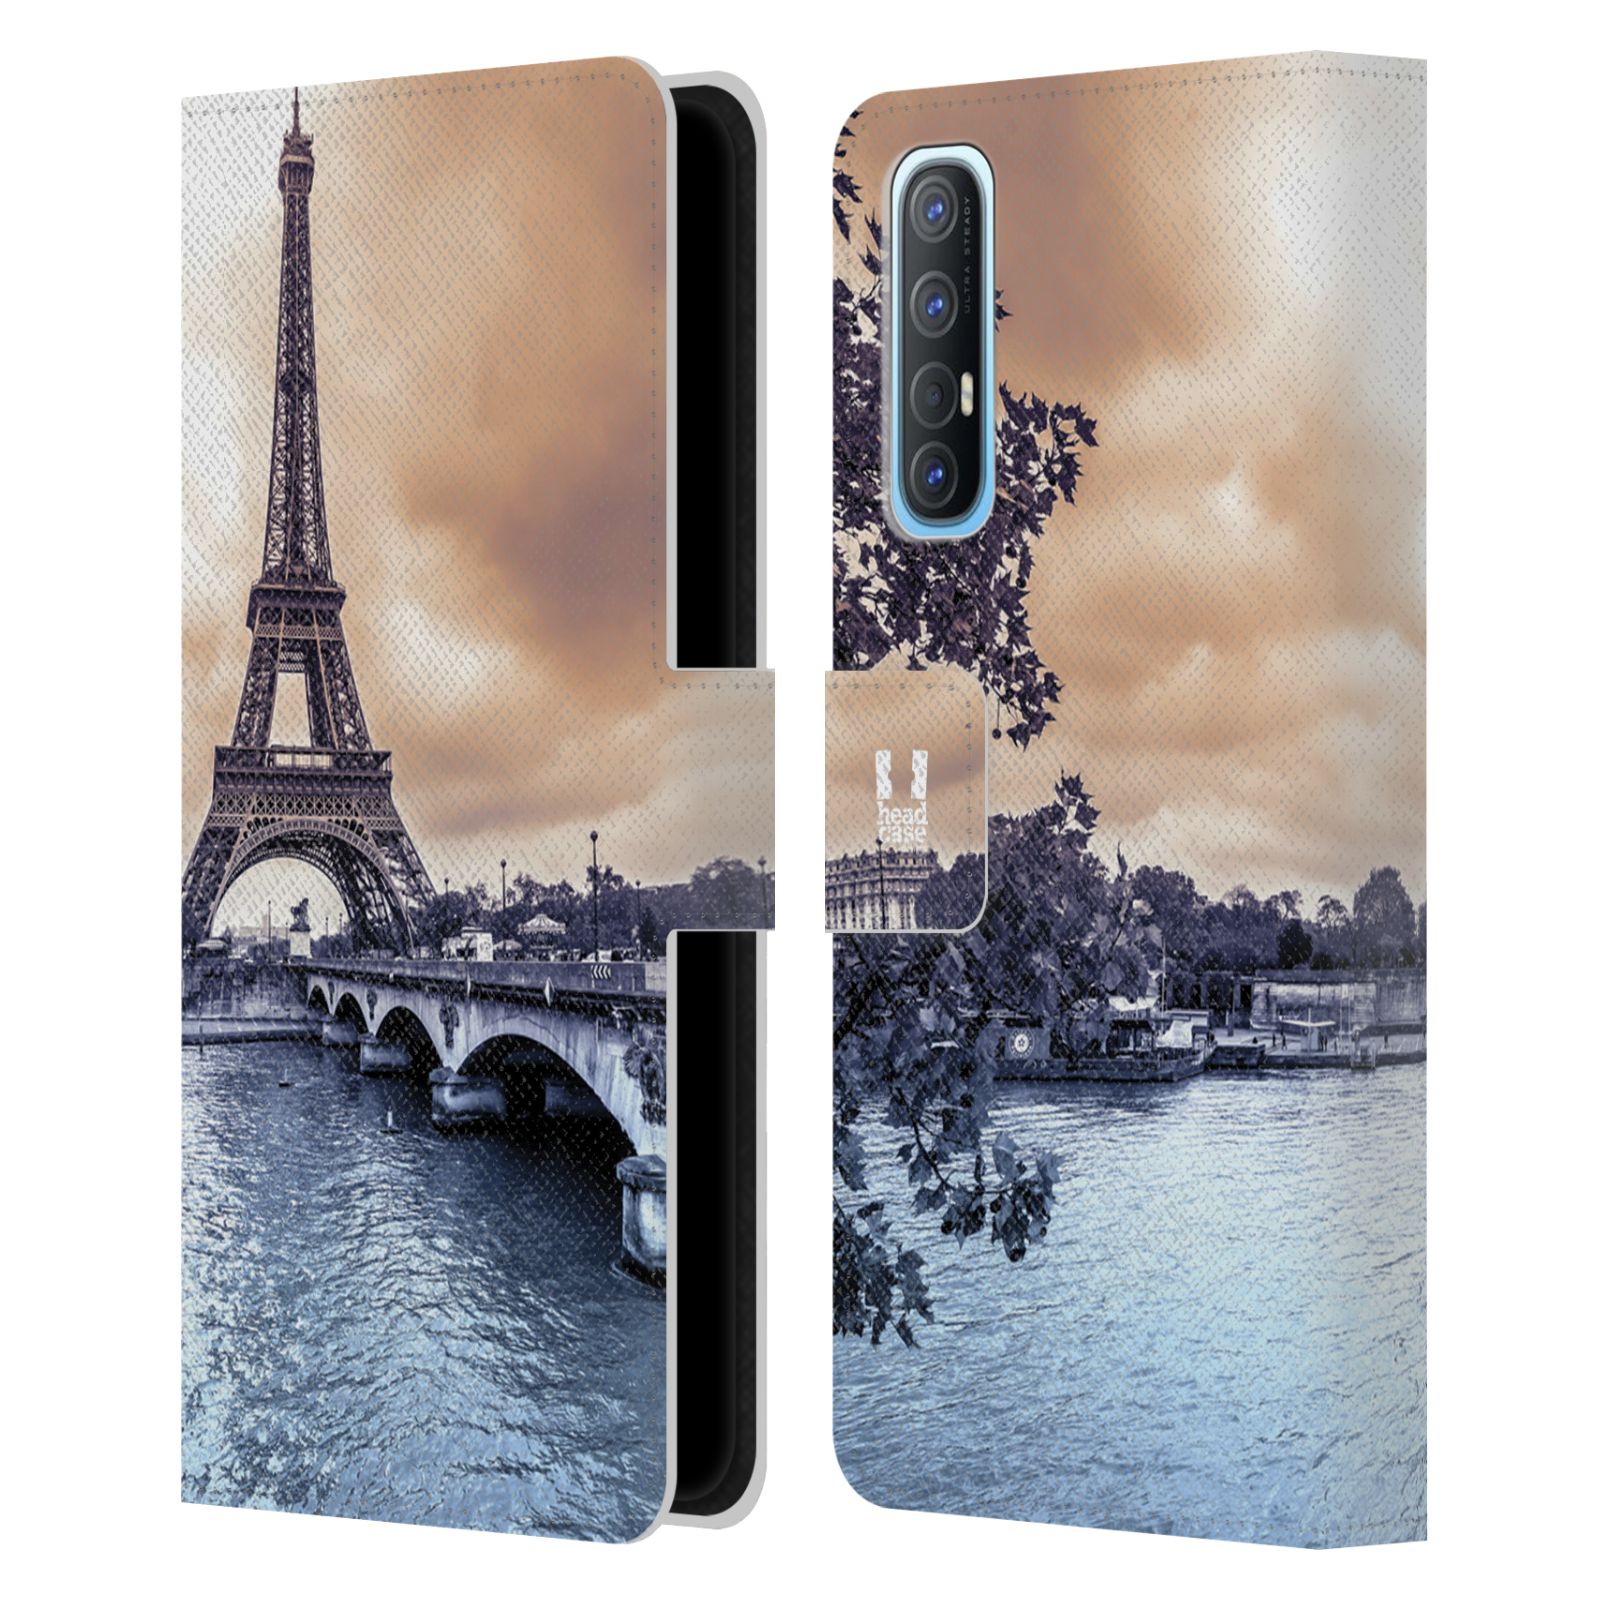 Pouzdro pro mobil Oppo Find X2 NEO - HEAD CASE - Eiffelova věž Paříž - Francie